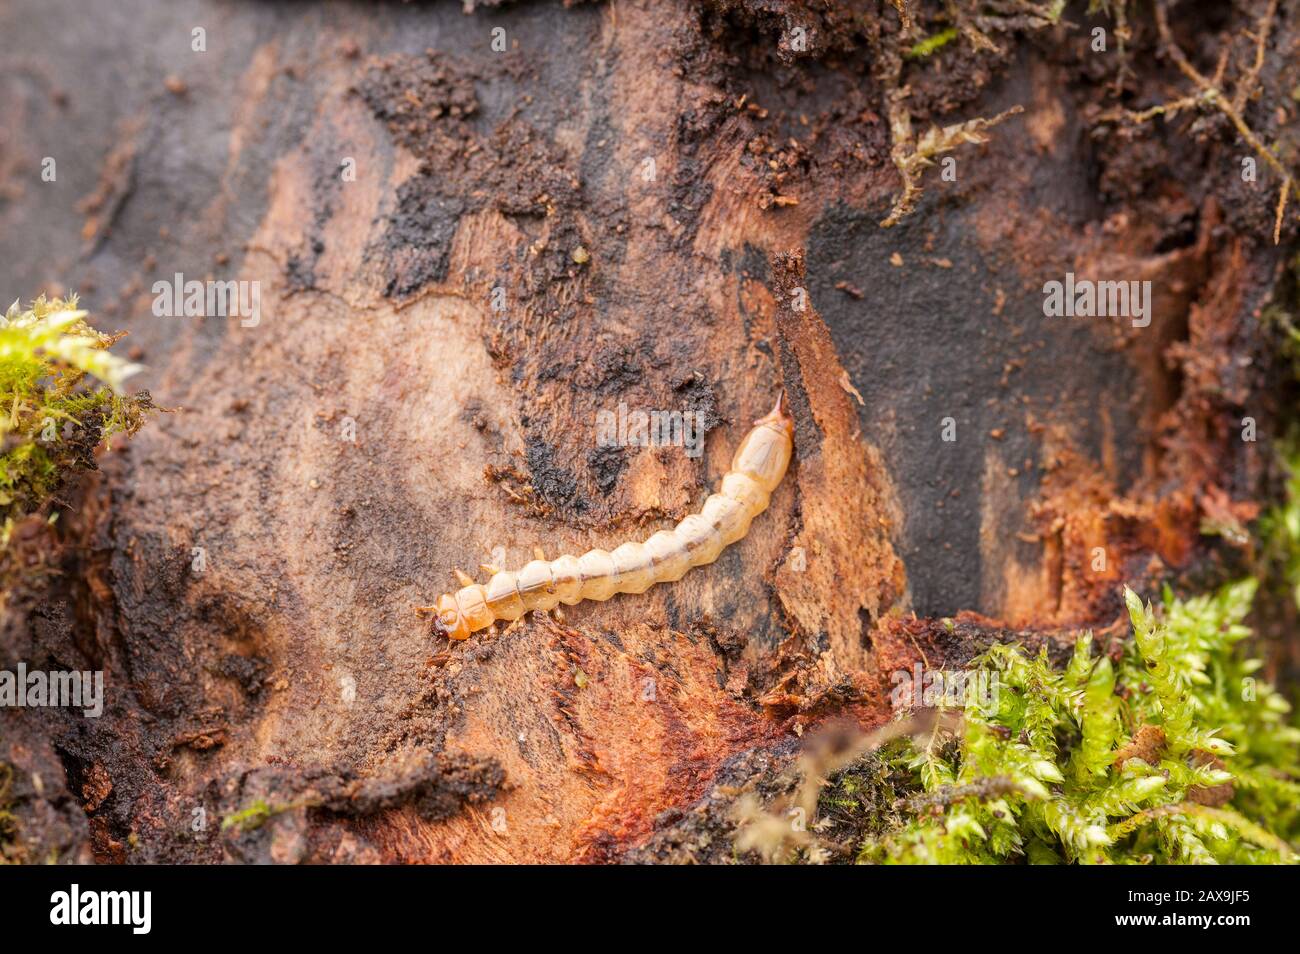 Larva cardinaliziana comune, pirocroa serraticornis, predatore di pidocchi che vivono sotto corteccia di sicomoro decadente con mandibole appuntite Foto Stock